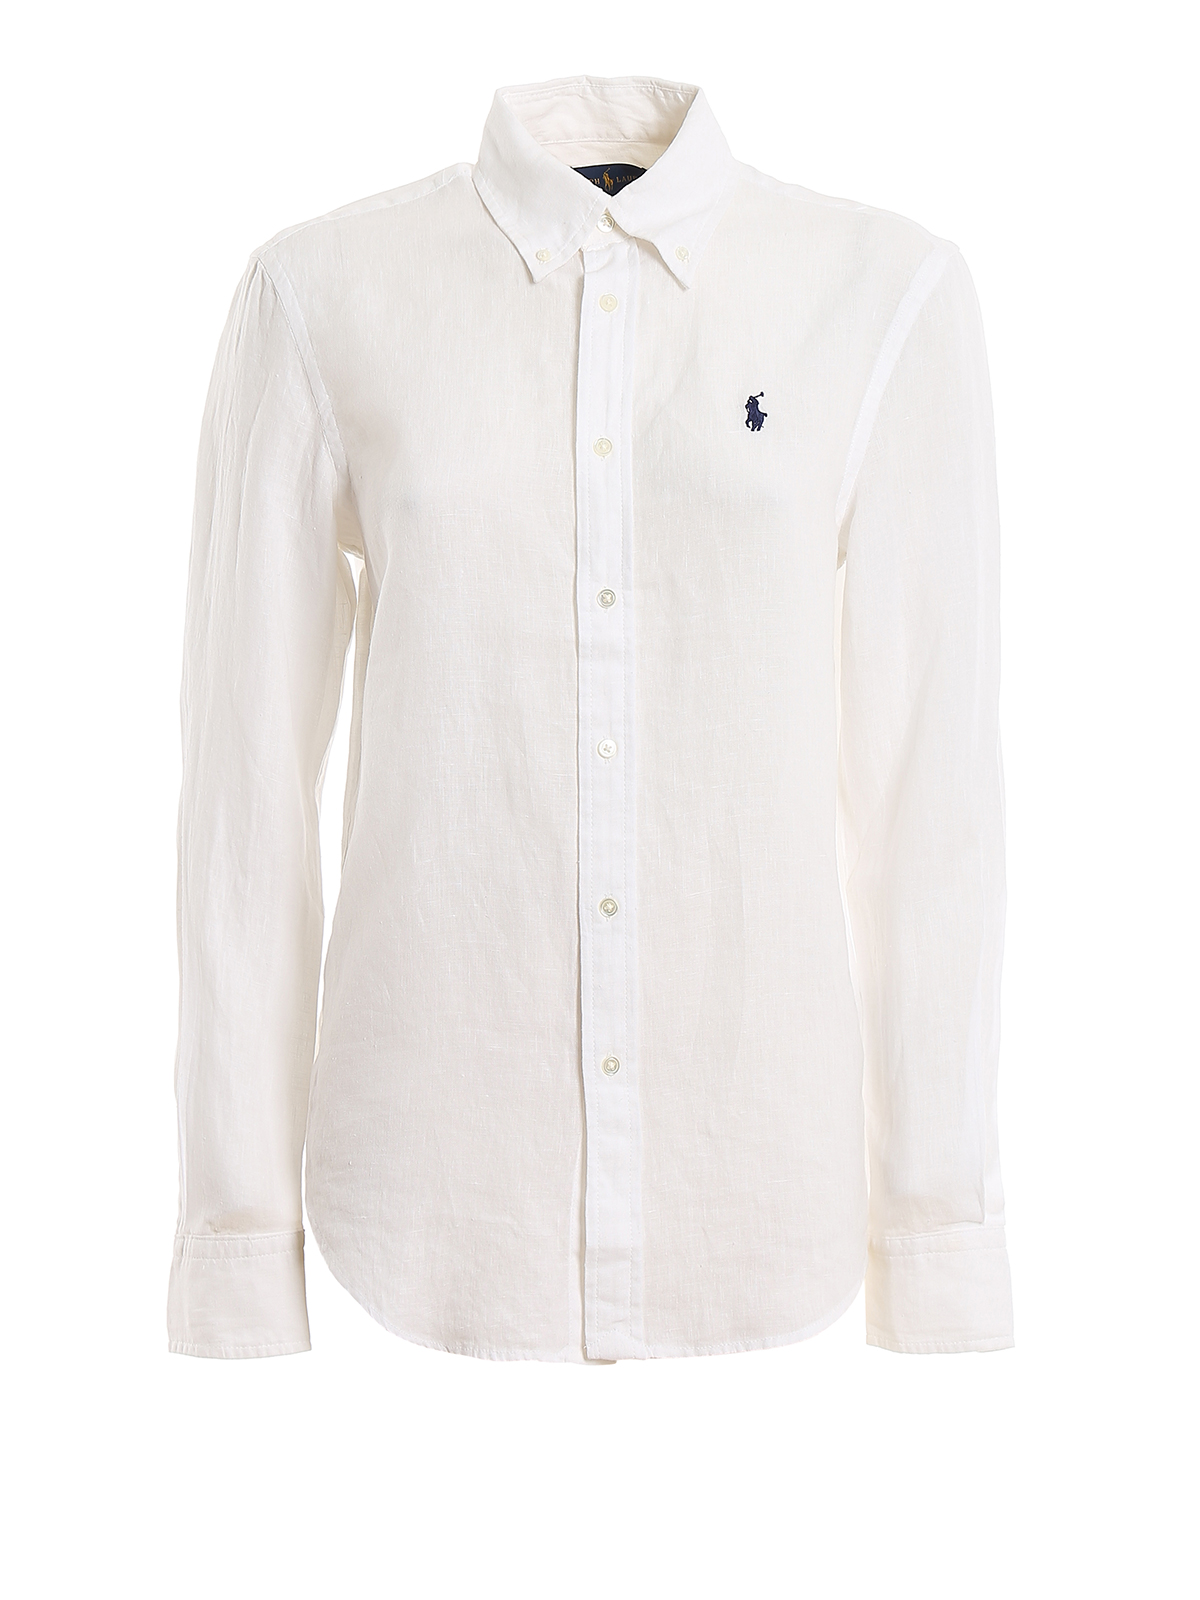 Shirts Polo Ralph Lauren - Relaxed fit logo embroidery linen shirt ...